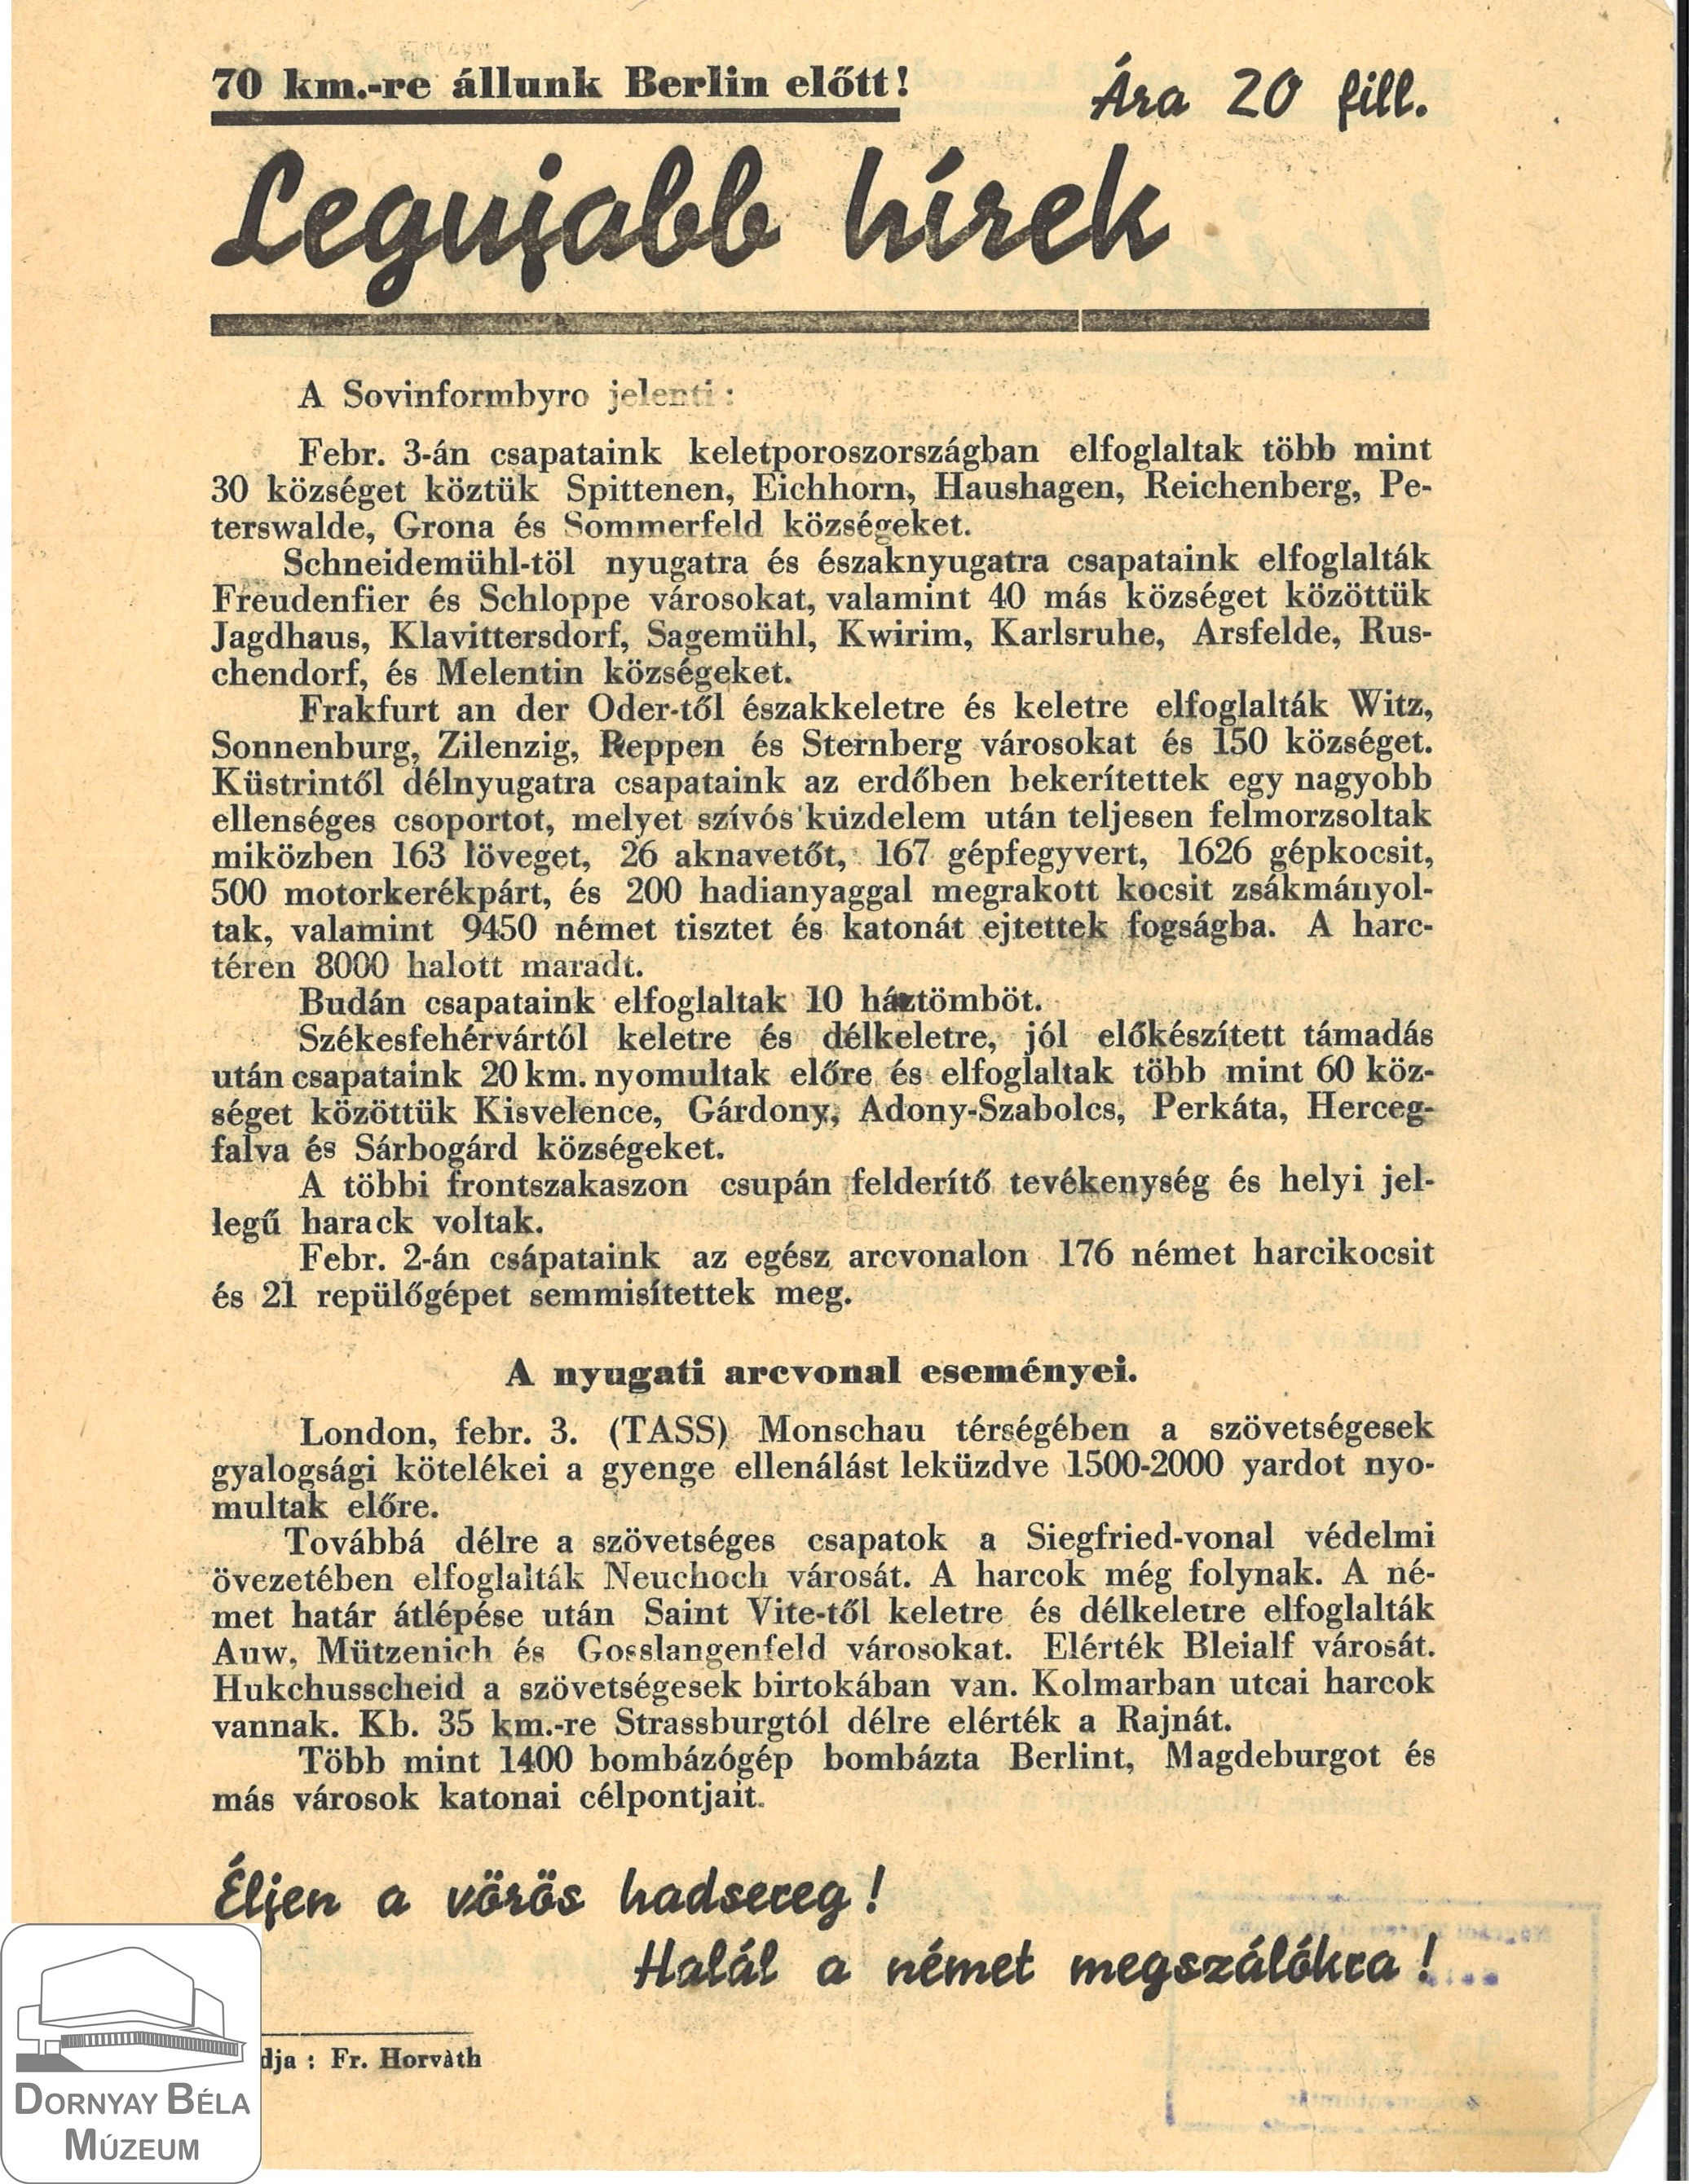 Legújabb Hírek (A szovinform hadi jelentése az 1945.febrár eleji fronthelyzetről) (Dornyay Béla Múzeum, Salgótarján CC BY-NC-SA)